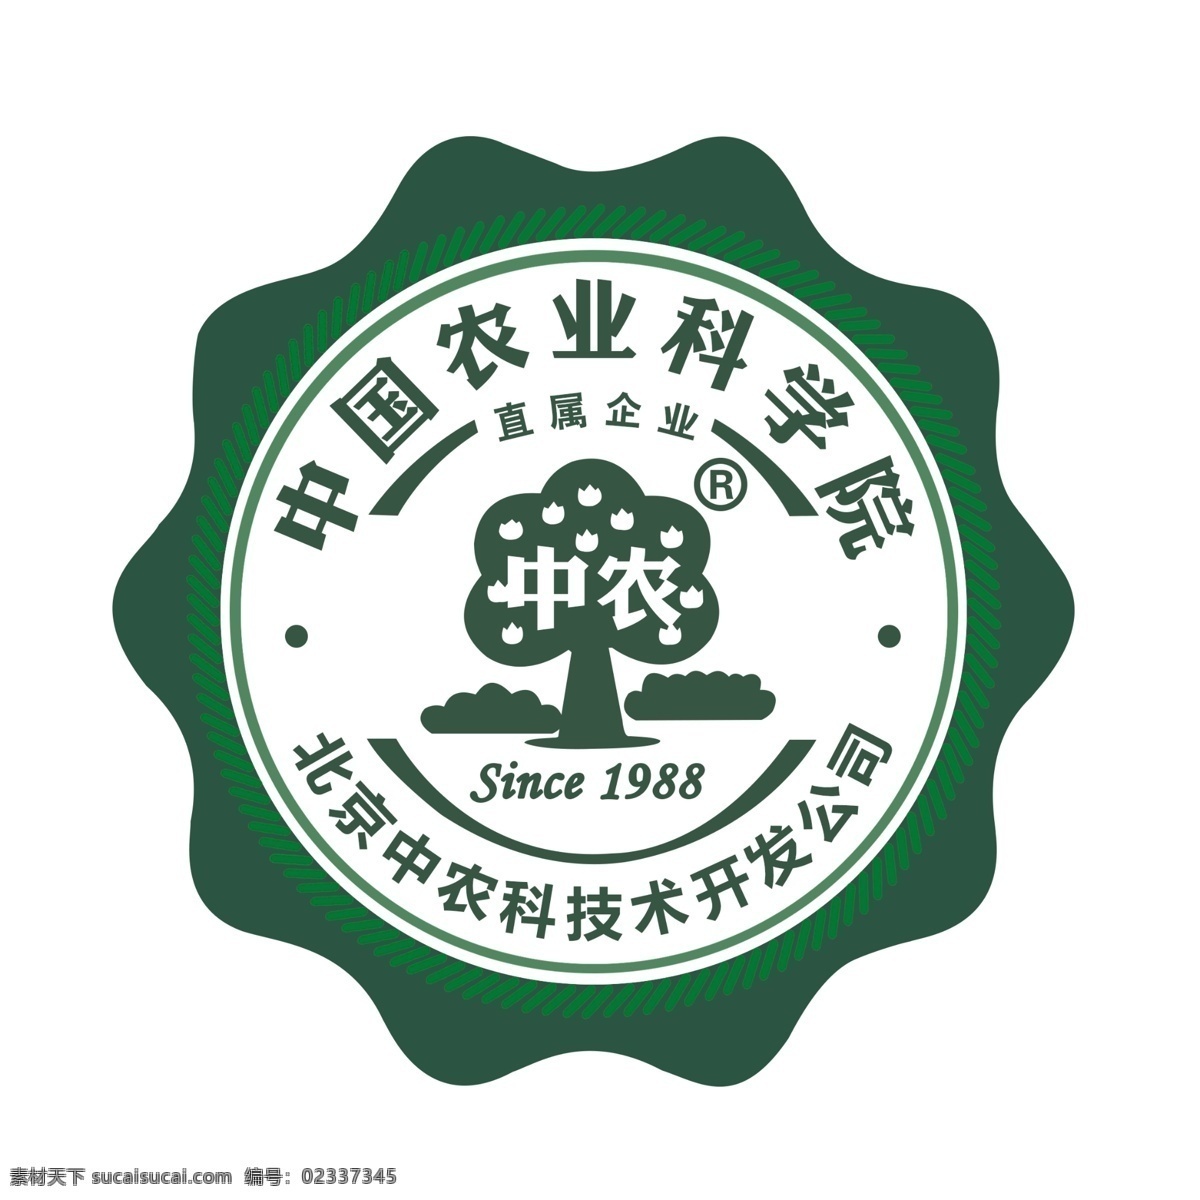 中国农业科学院 中农 北京 科技开发 公司 since1988 原创设计 其他原创设计